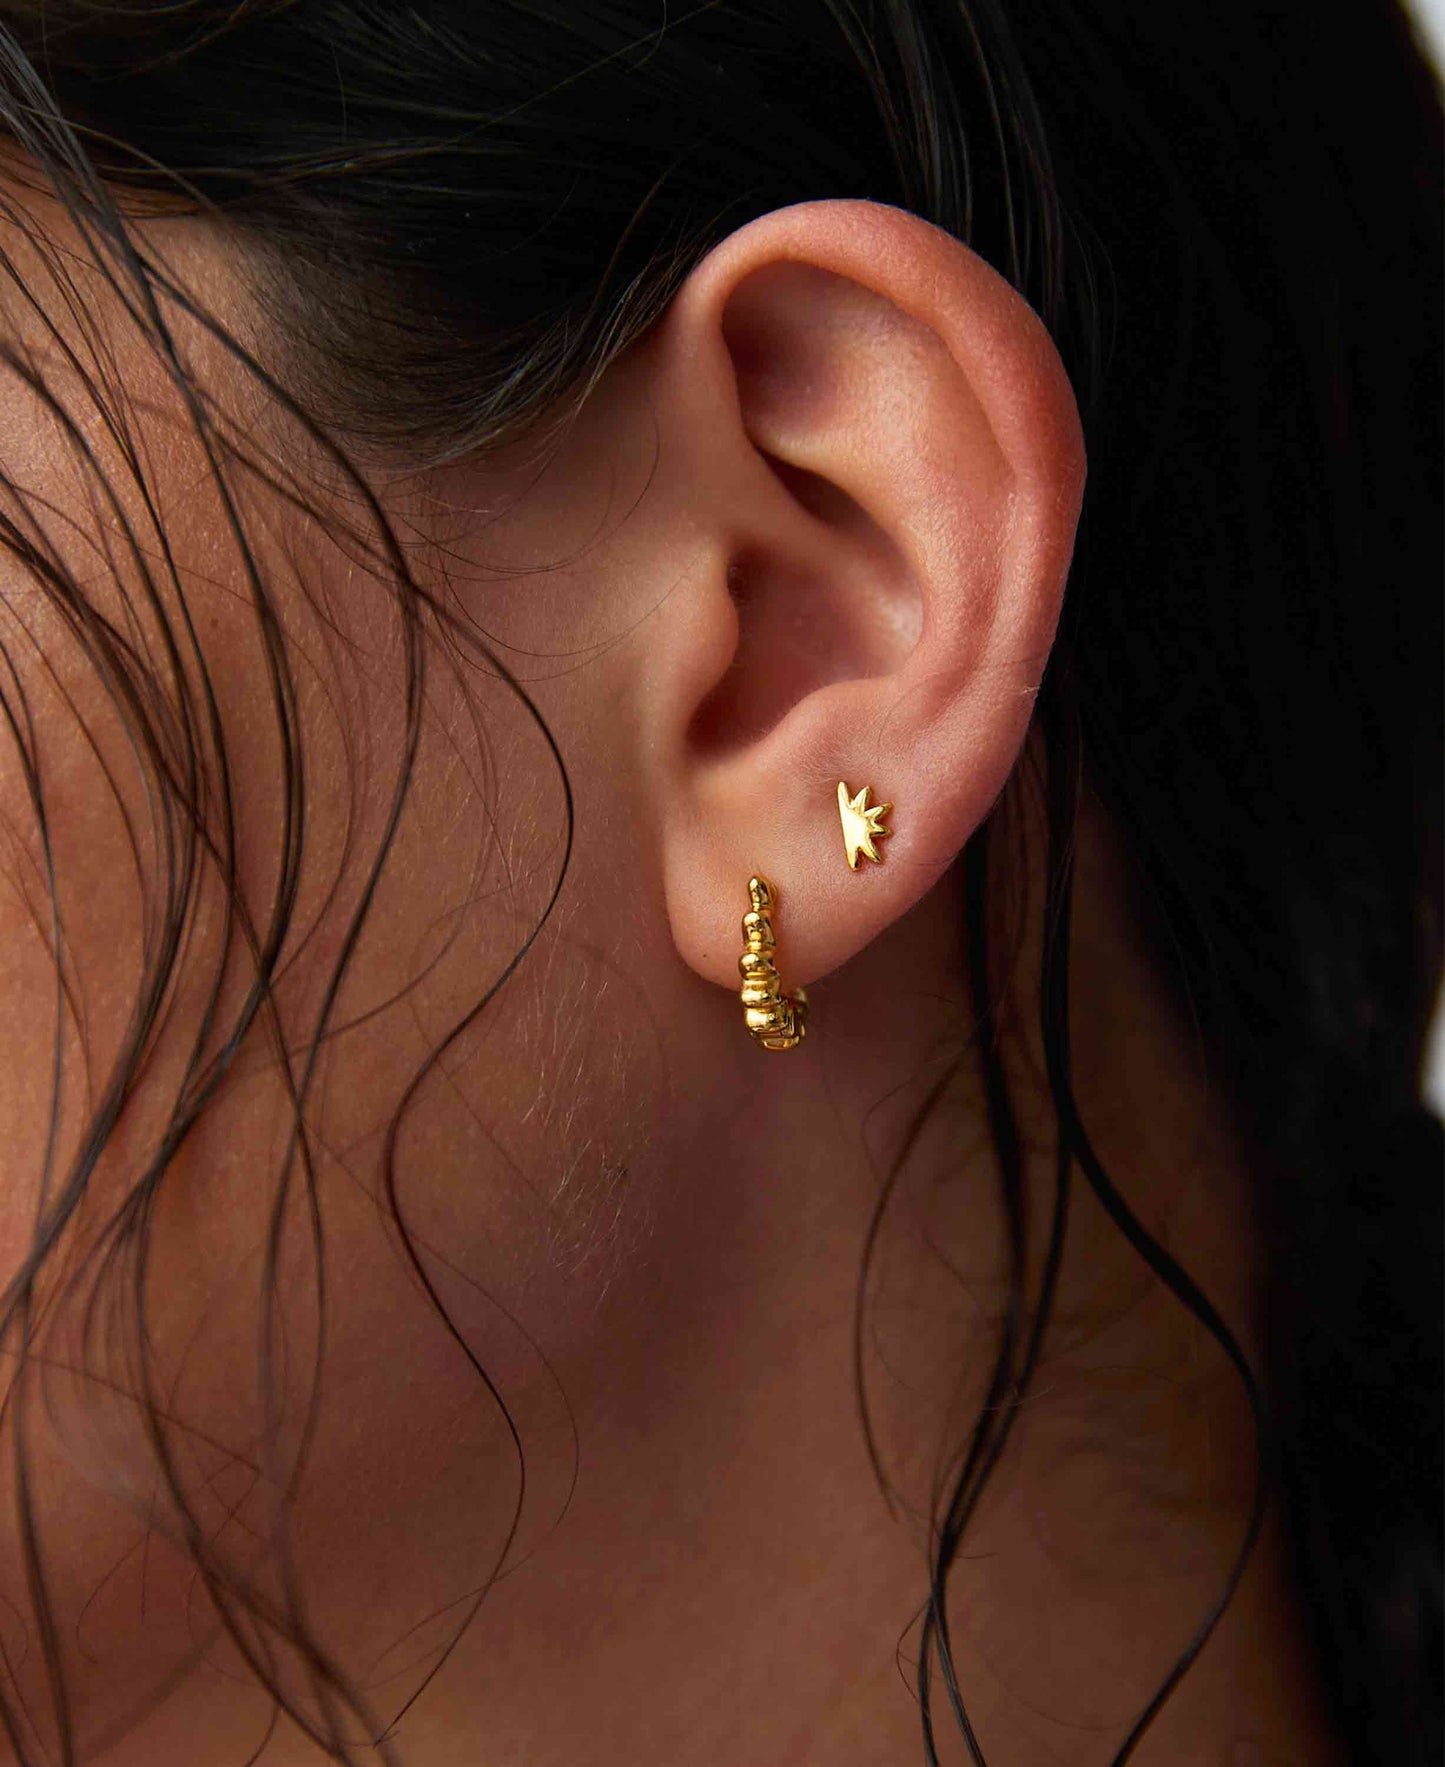 Wavy earrings